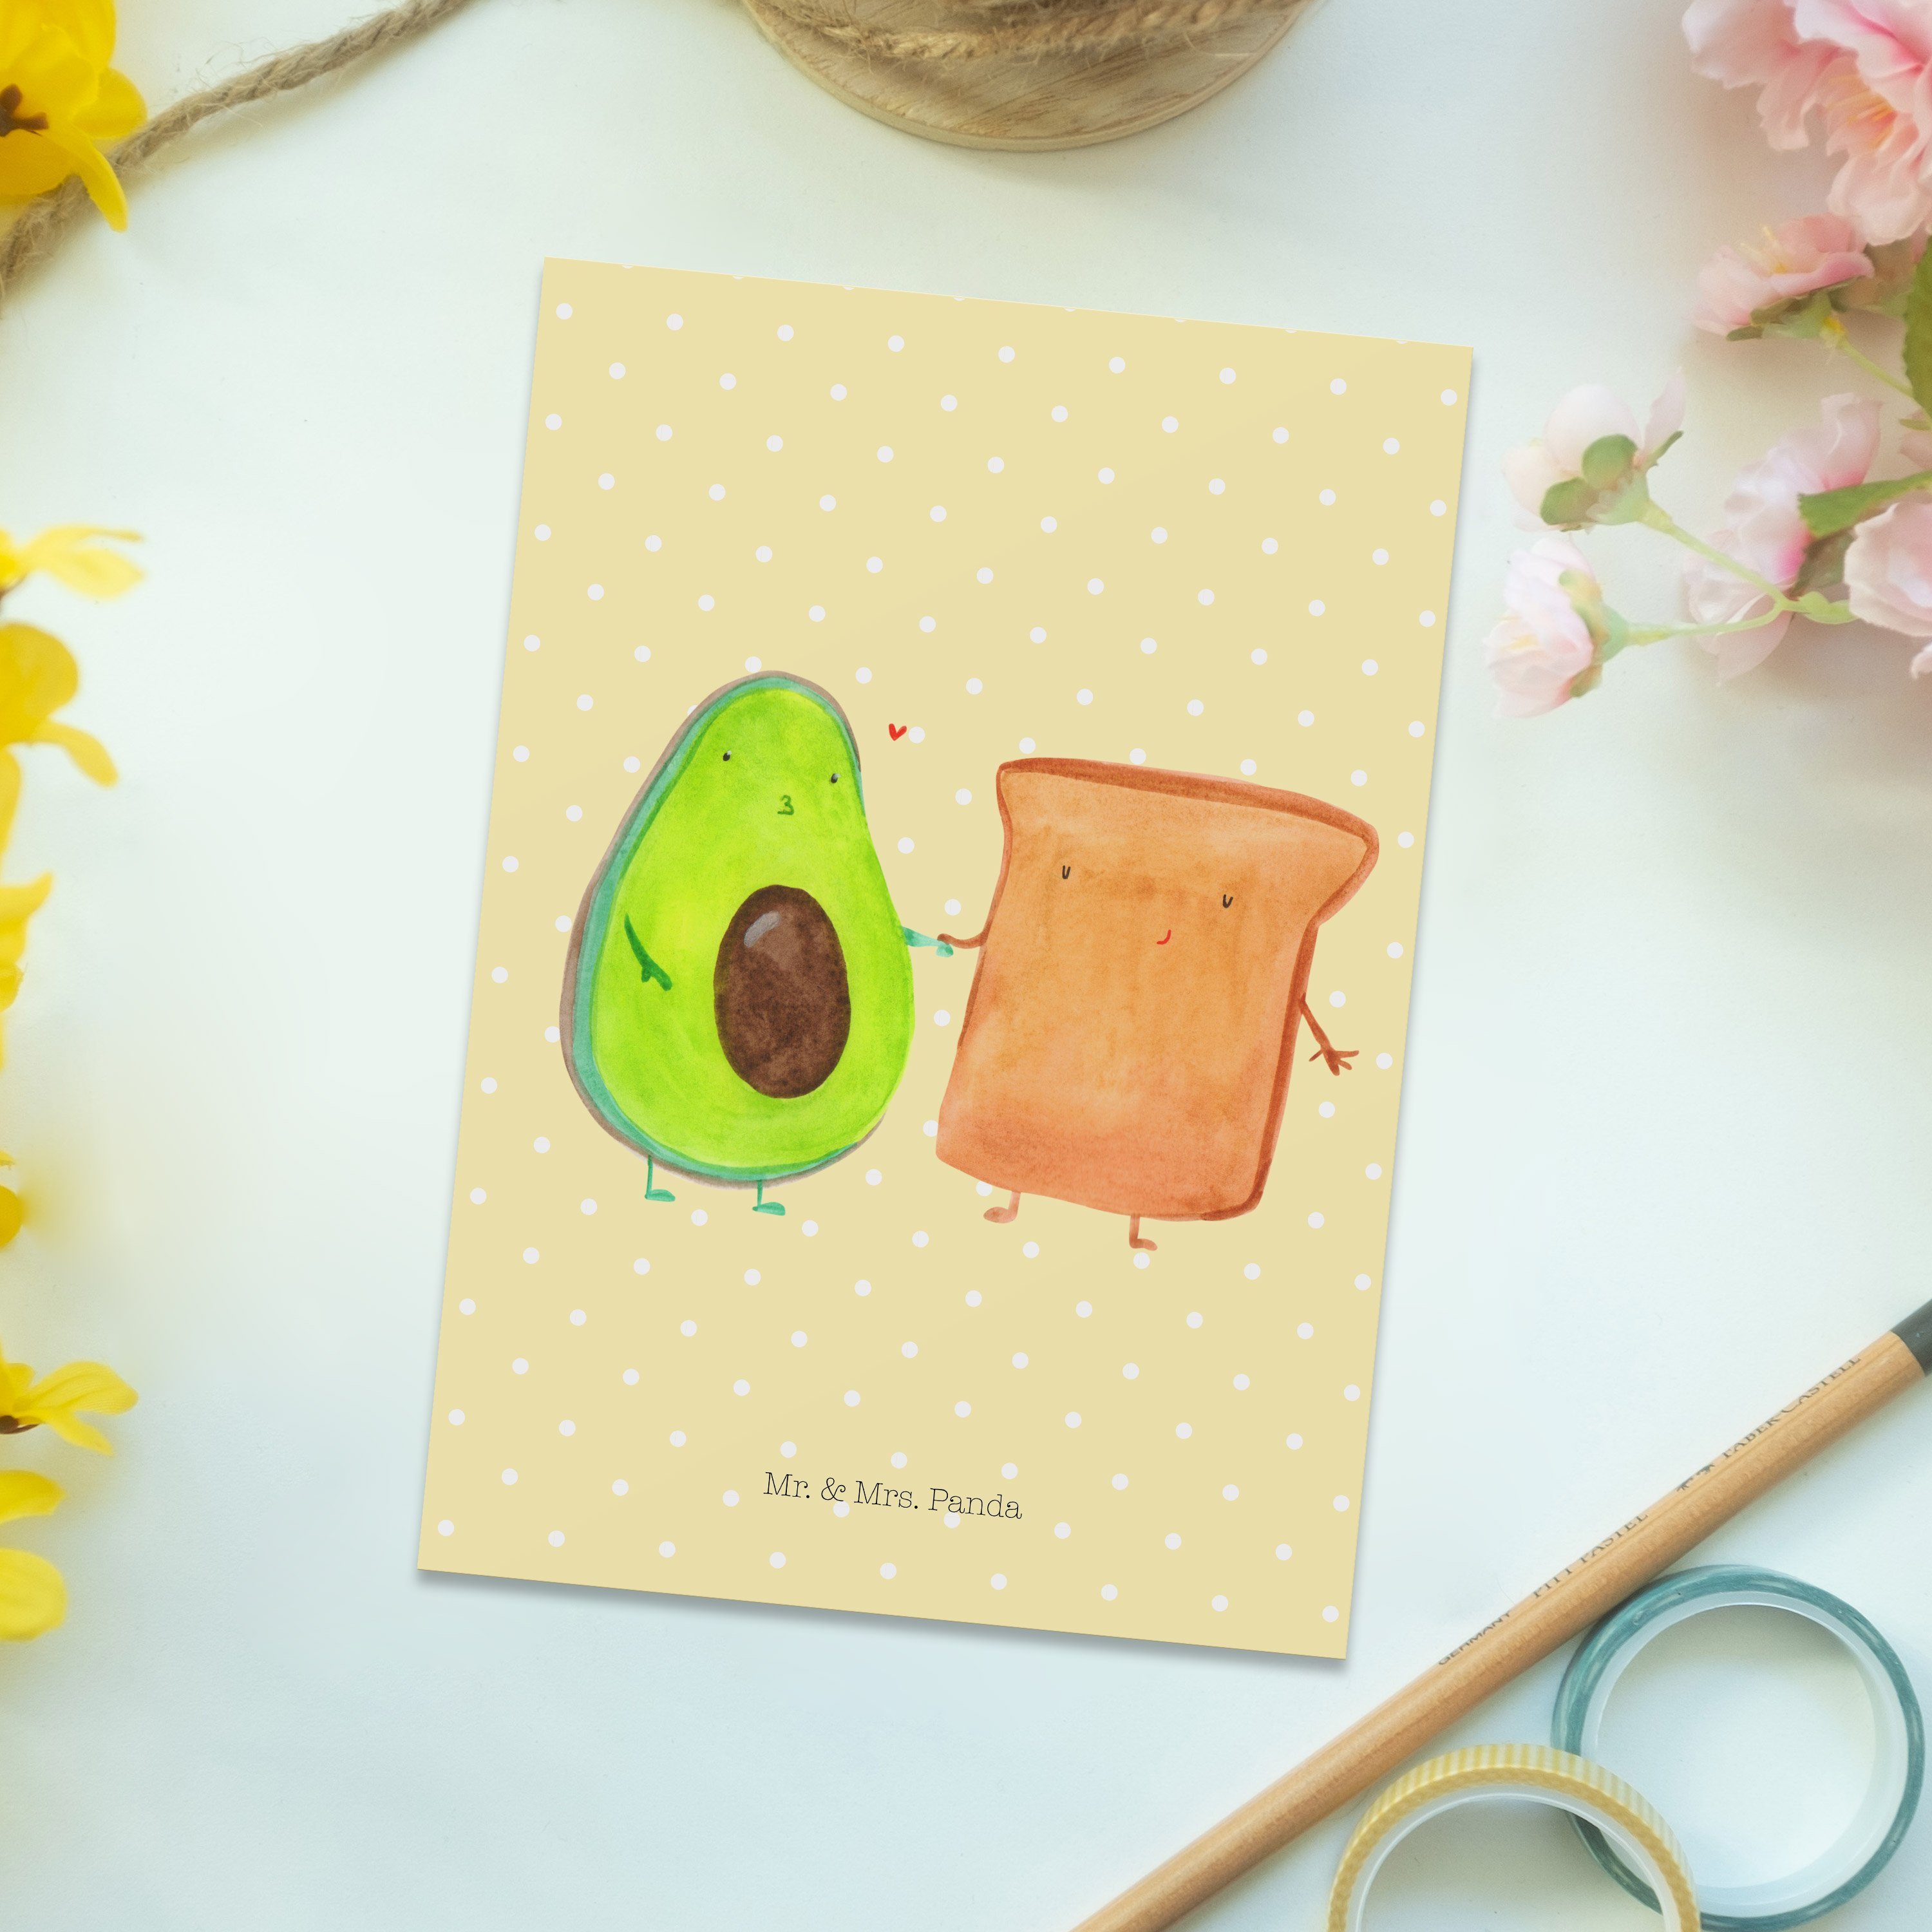 Mr. & Mrs. Panda Postkarte Geschenk, Pastell Gru Gelb Ansichtskarte, Toast - Veggie, - + Avocado